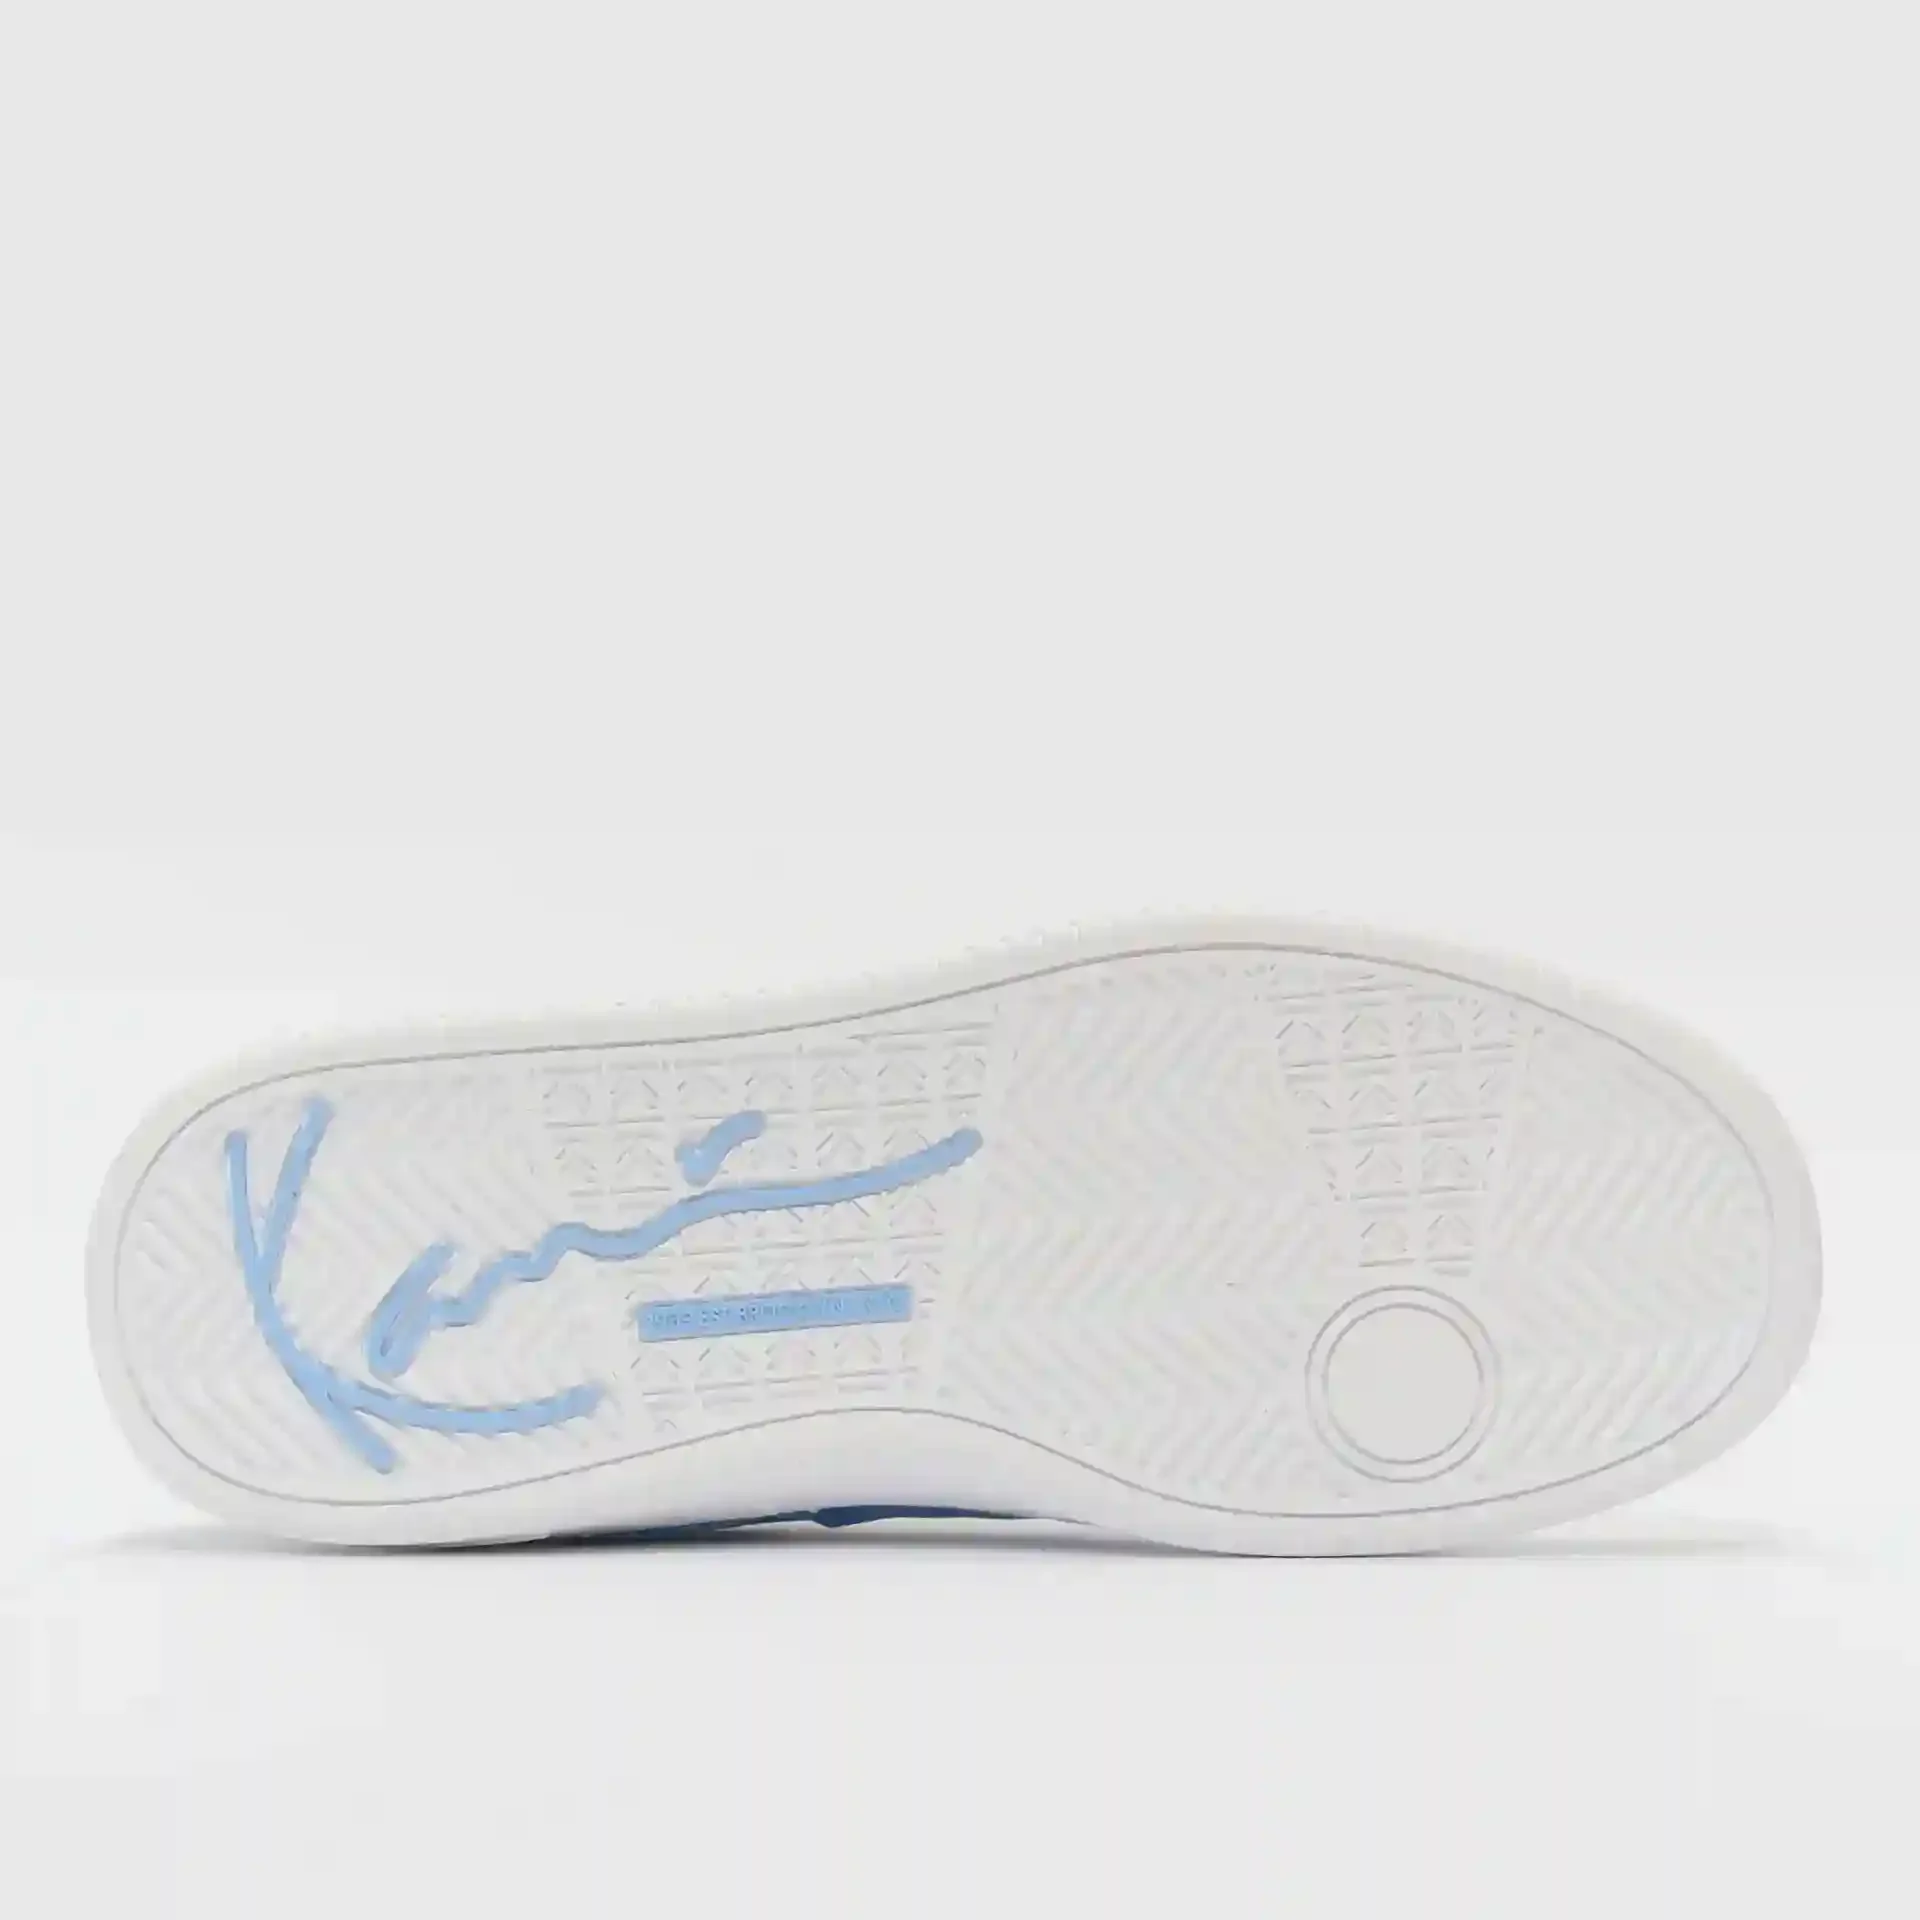 Karl Kani 89 Low V2 PRM Sneaker Light Blue/White